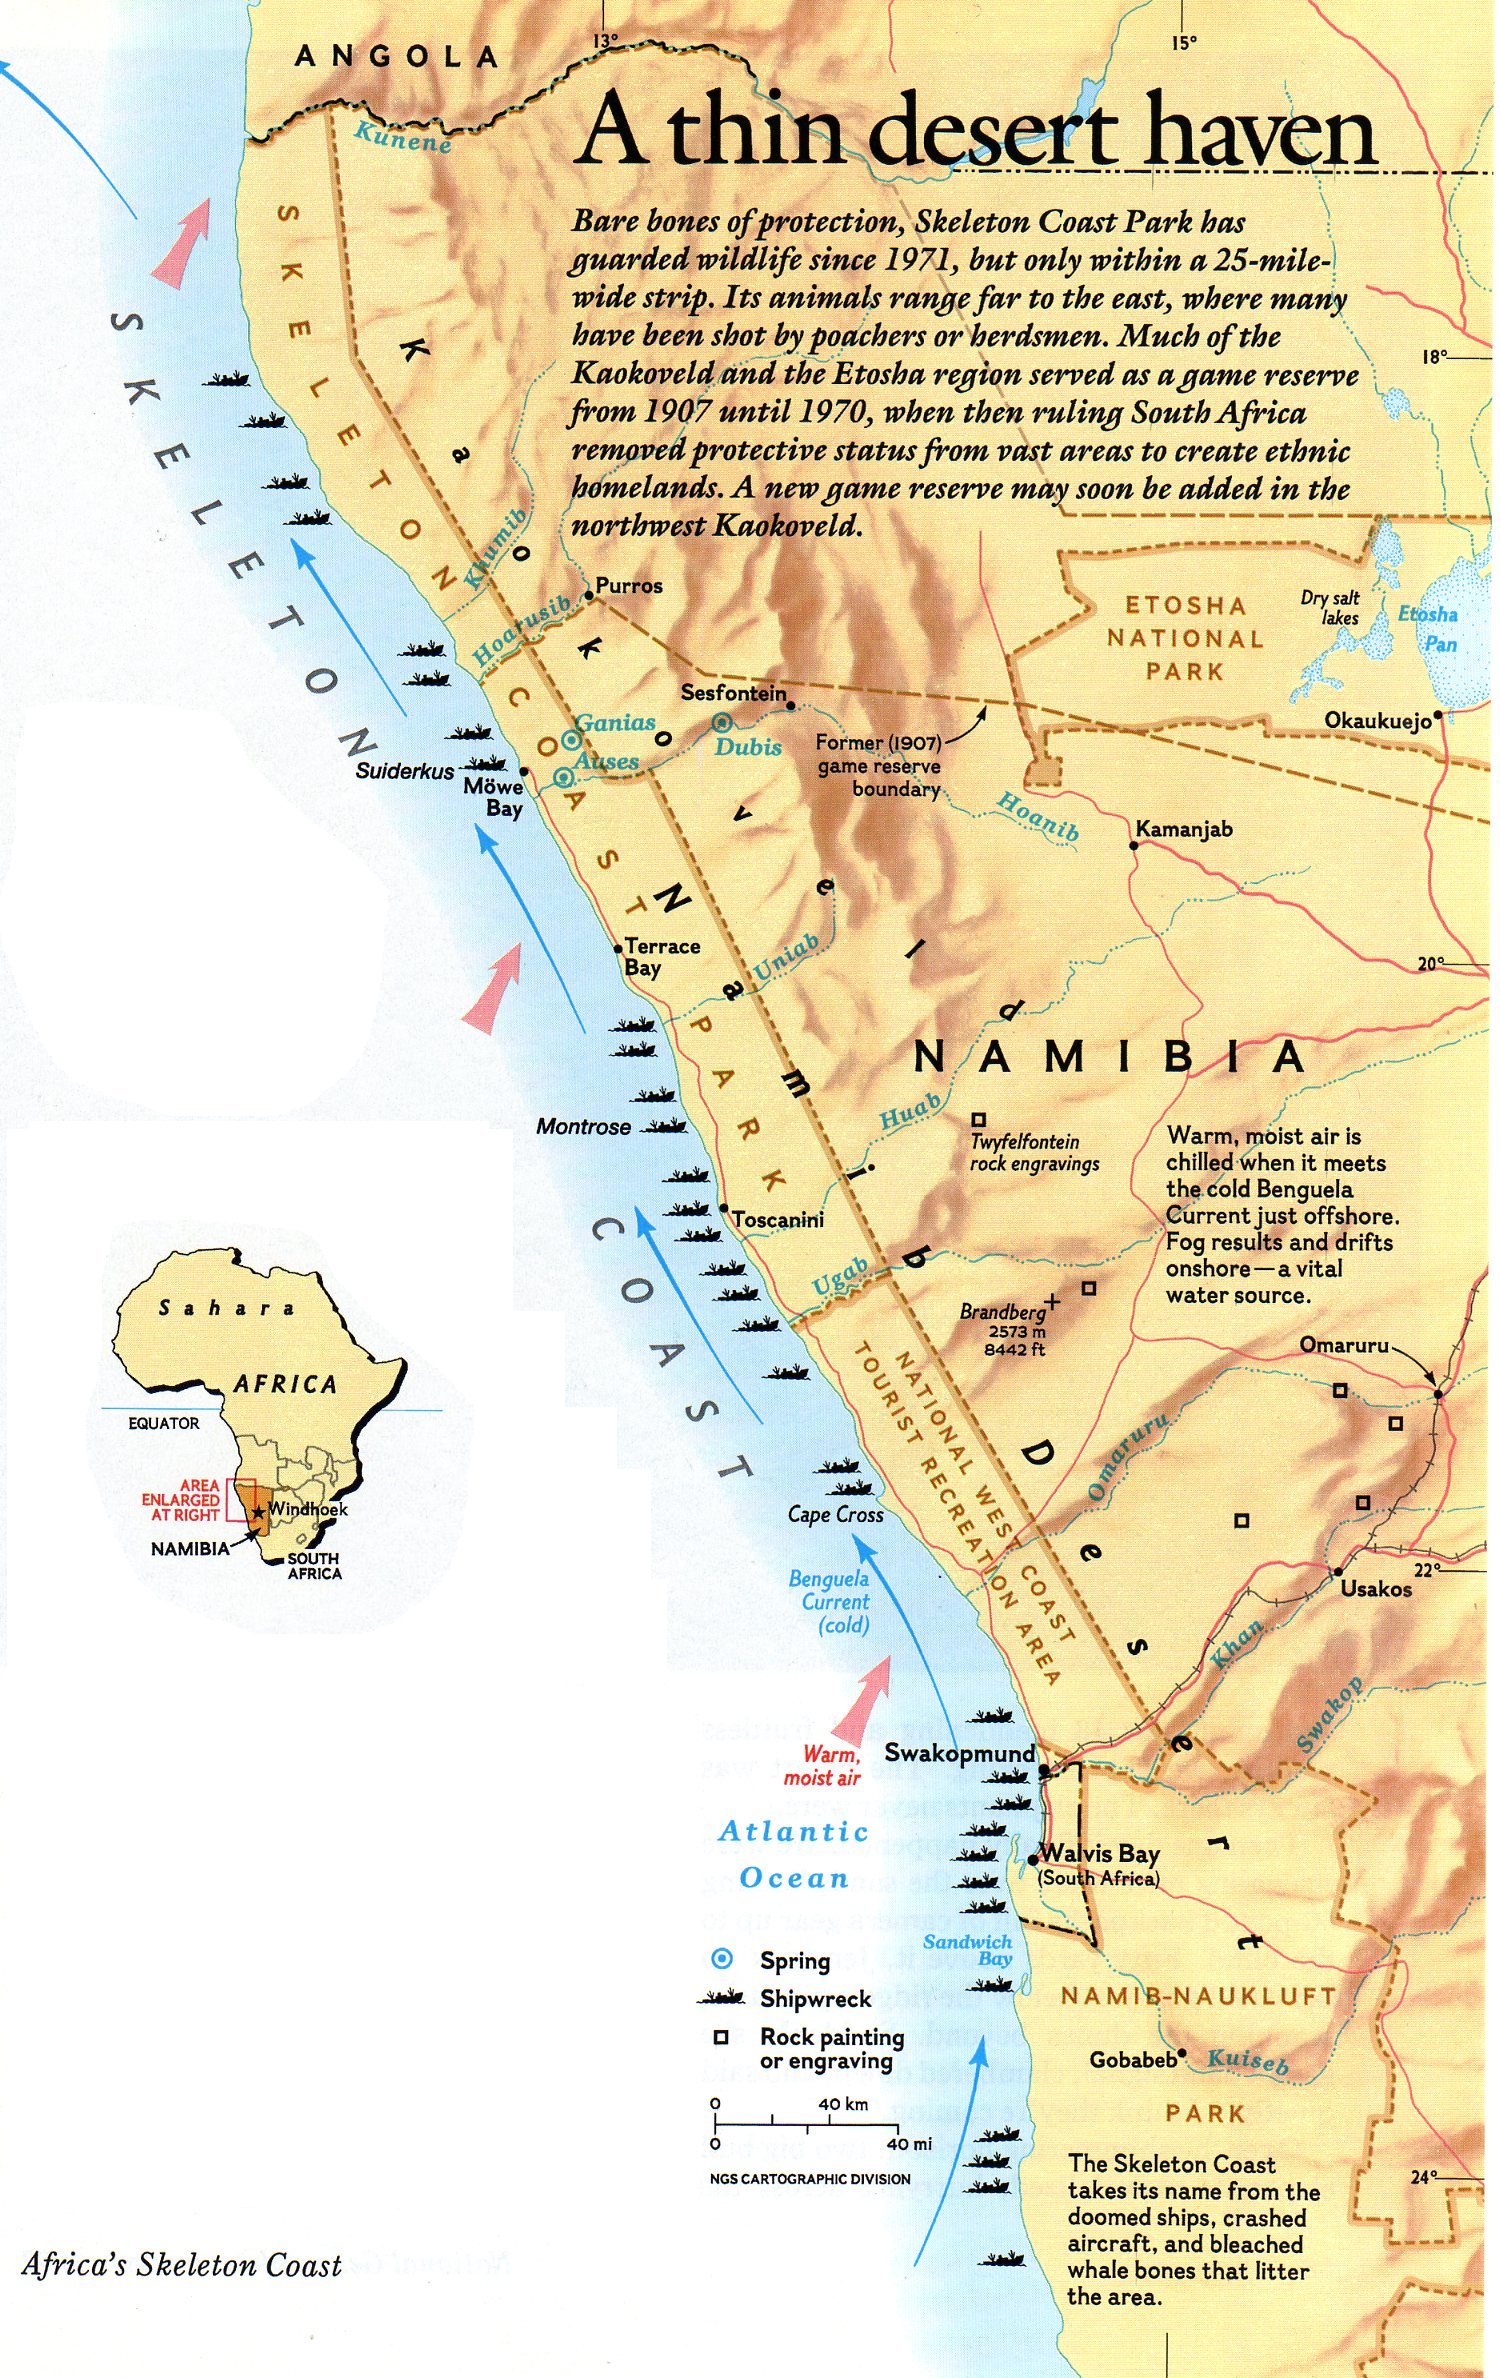 Carte ancienne de la Côte des squelettes (Skeleton coast) de la Namibie indiquant la position des nombreuses épaves qui la parsèment.